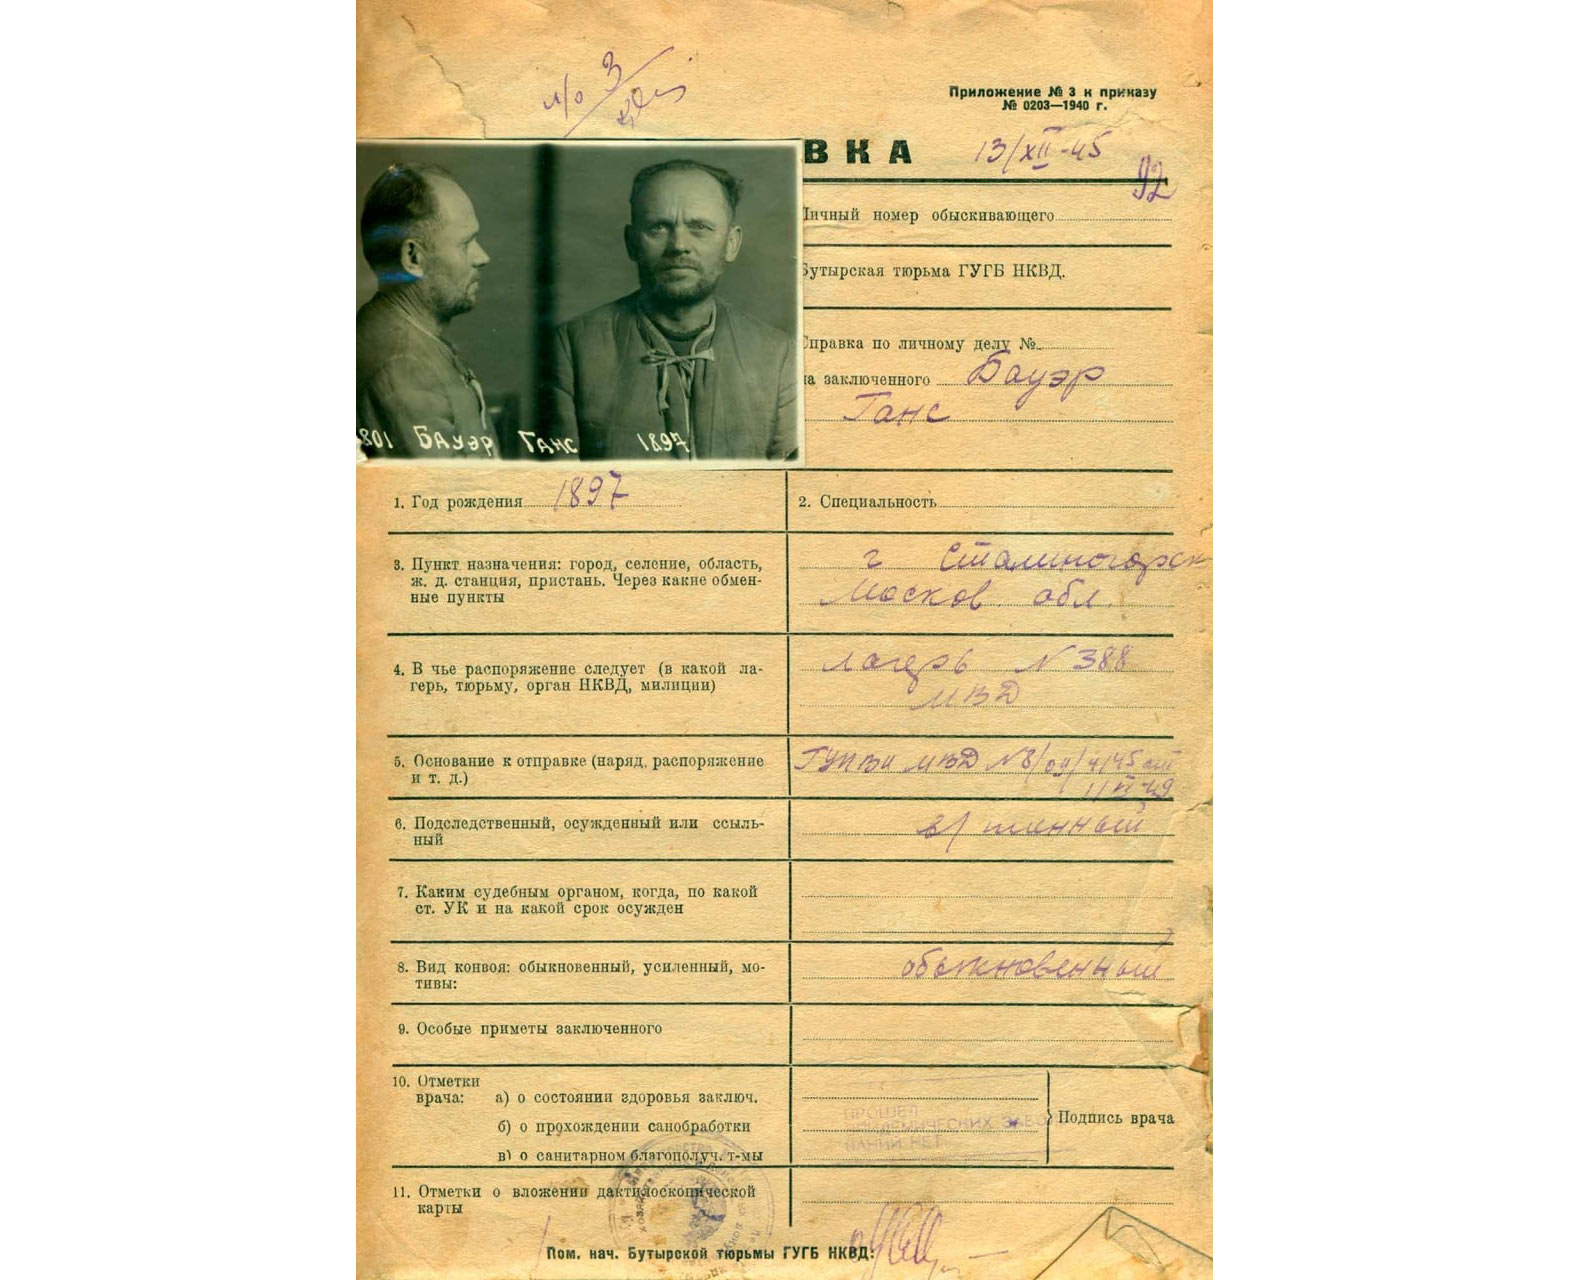 ФСБ России обнародовала новые архивные документы о самоубийстве Гитлера в конце апреля 1945 года. Фото © Telegram / РИА "Новости"